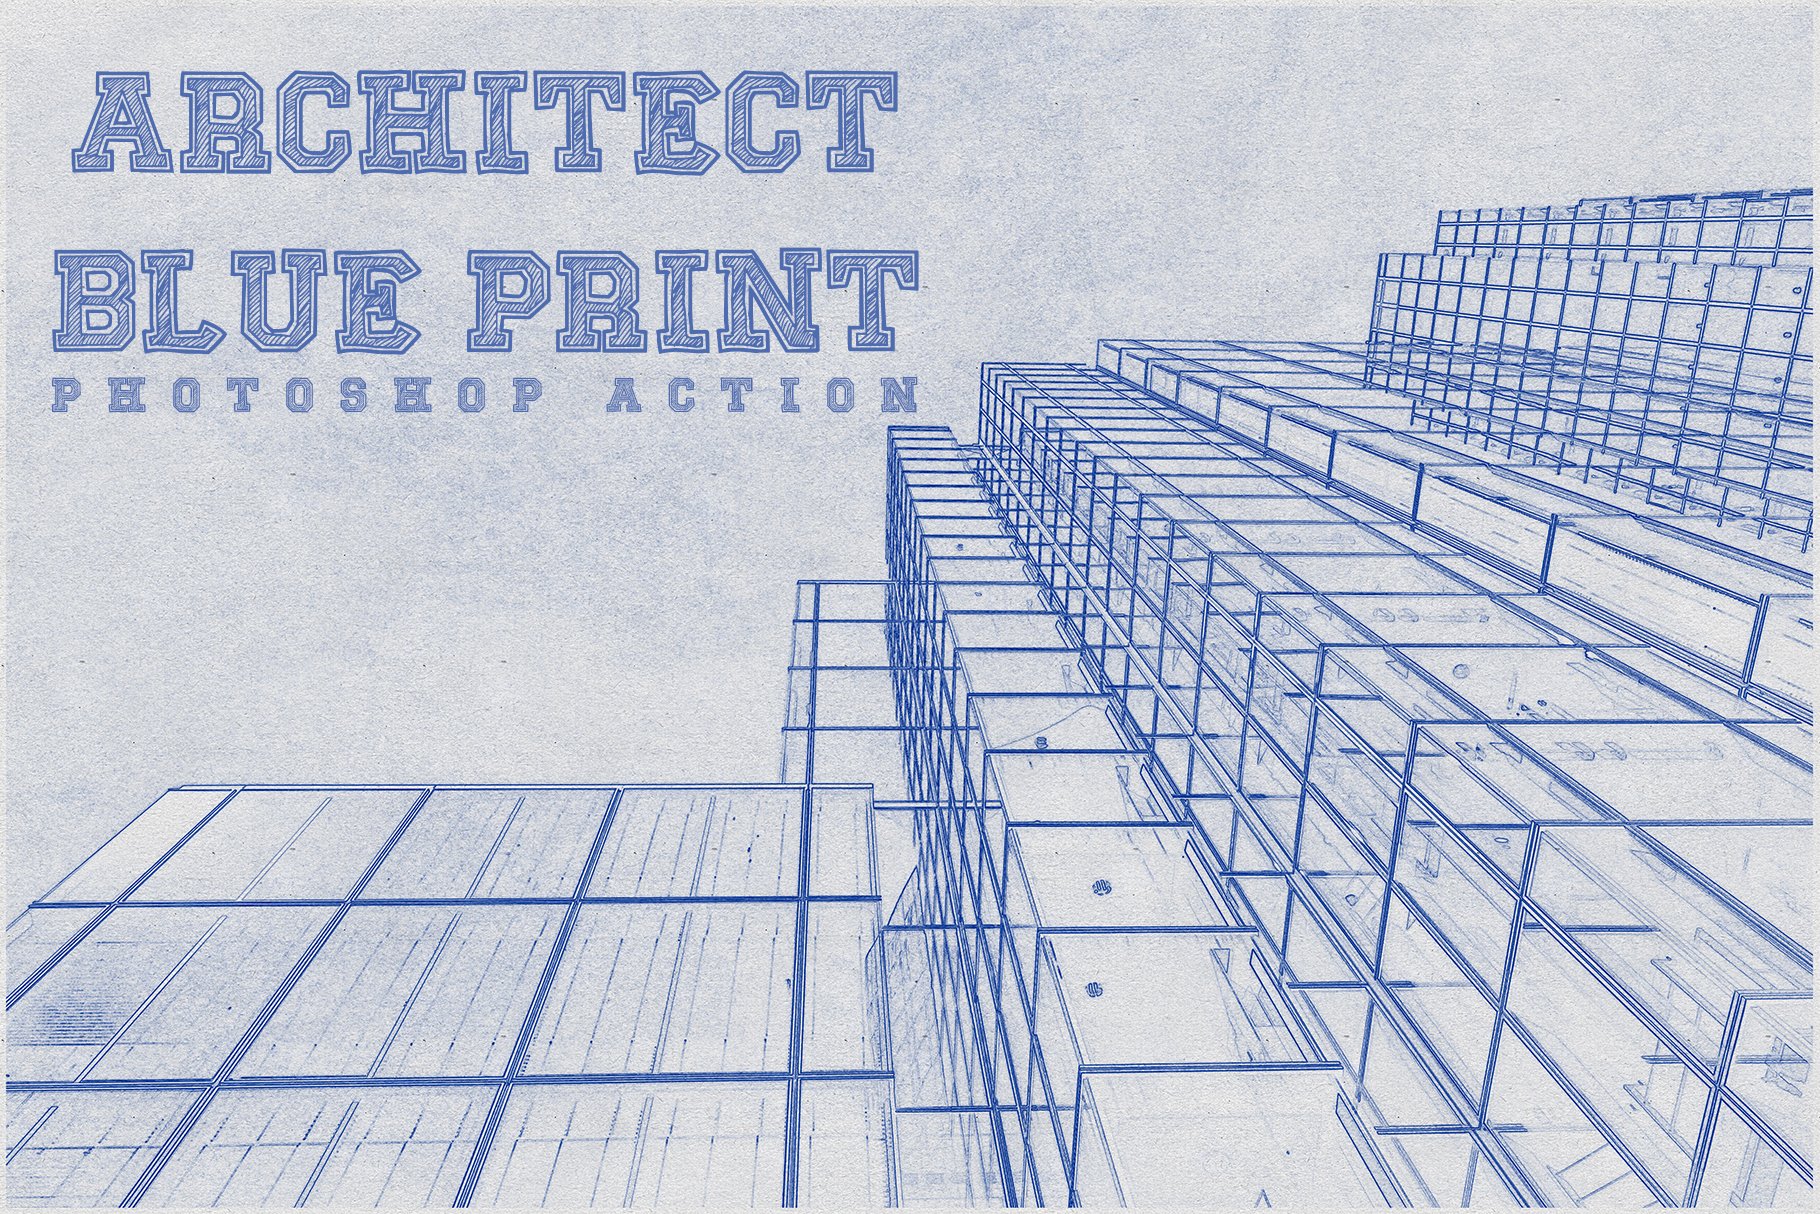 Architect Blueprint Photoshop Actioncover image.